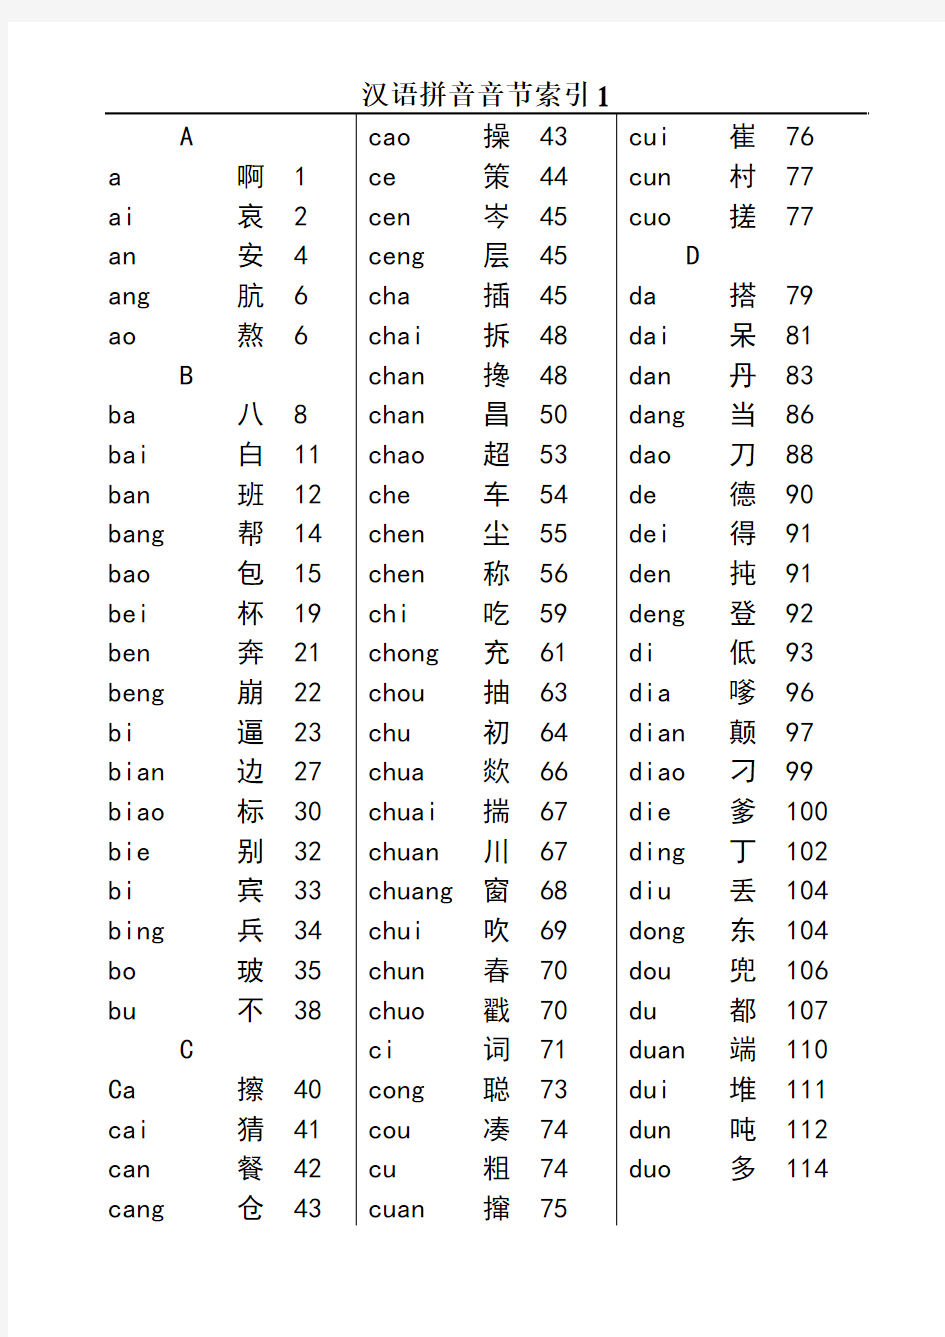 汉语拼音音节索引表--1998版